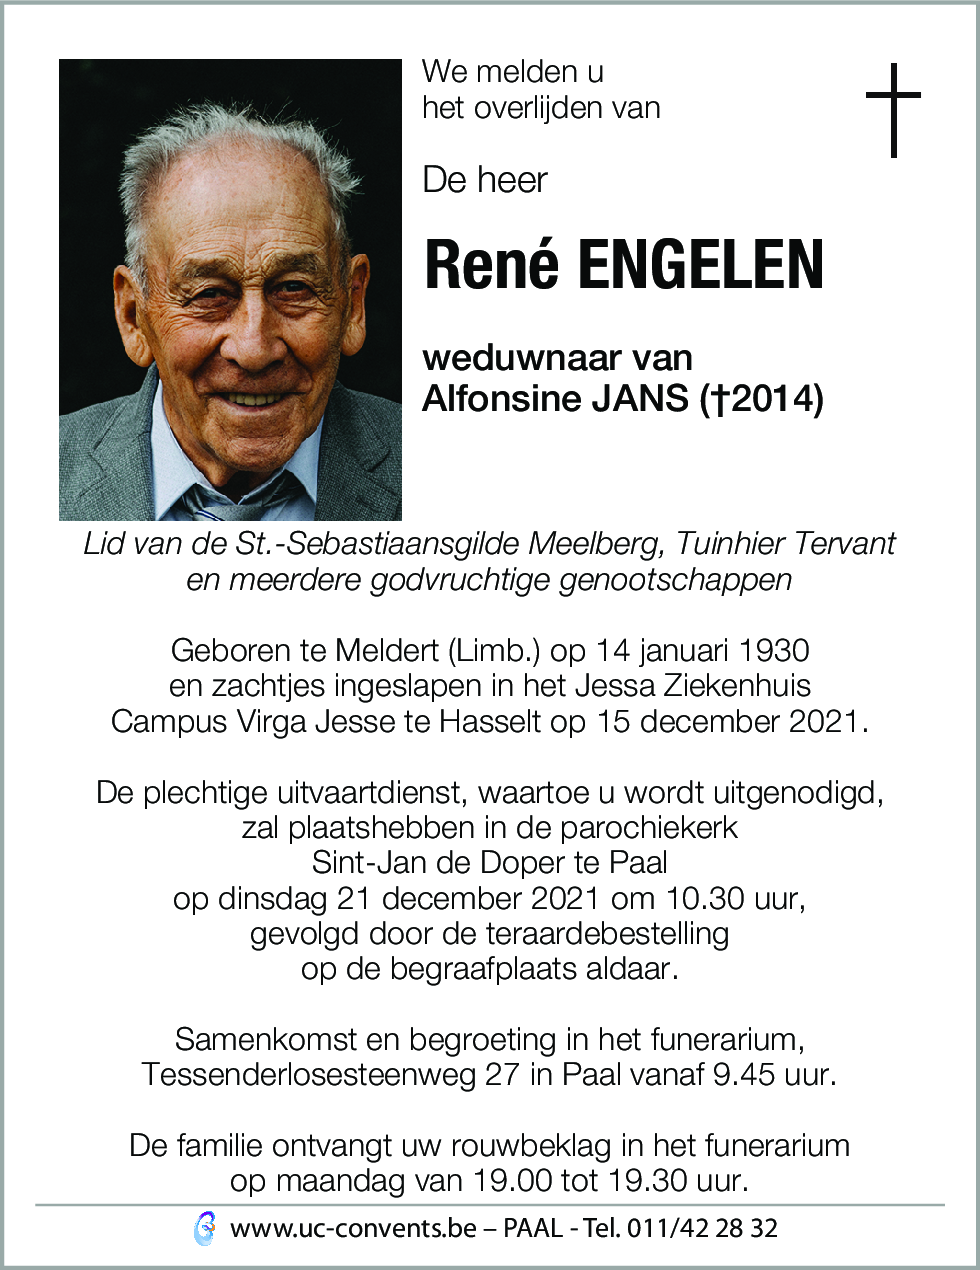 René Engelen